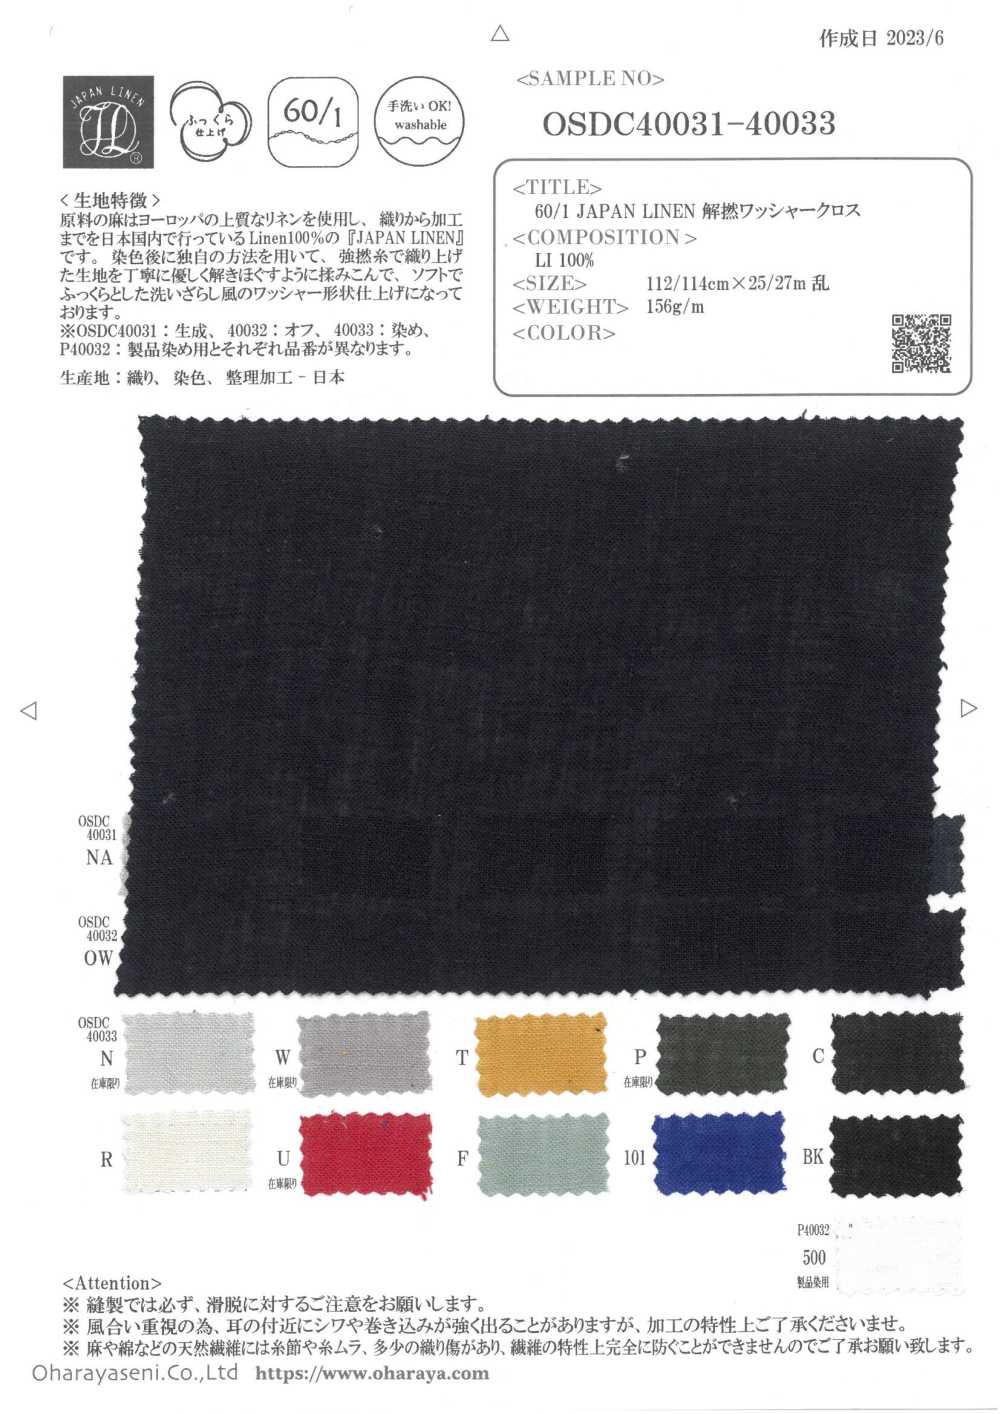 OSDC40033 60/1 JAPAN LINEN Ungedrehtes, Waschmaschinenbehandeltes Tuch (Gefärbt)[Textilgewebe] Oharayaseni